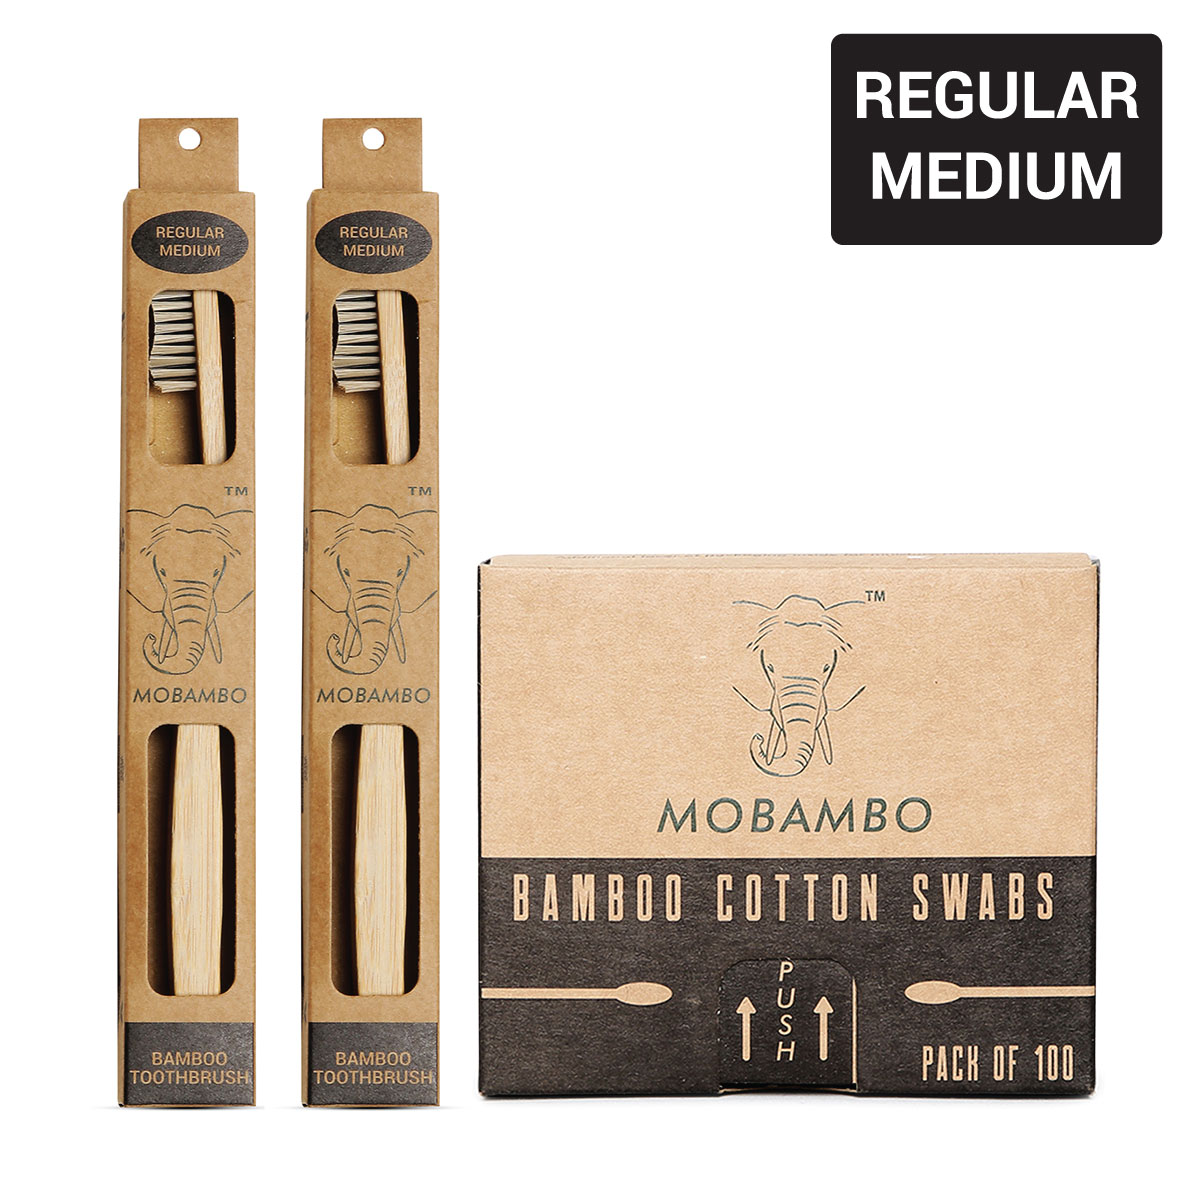 Mobambo Regular Medium Toothbrush and Cotton Swab Combo